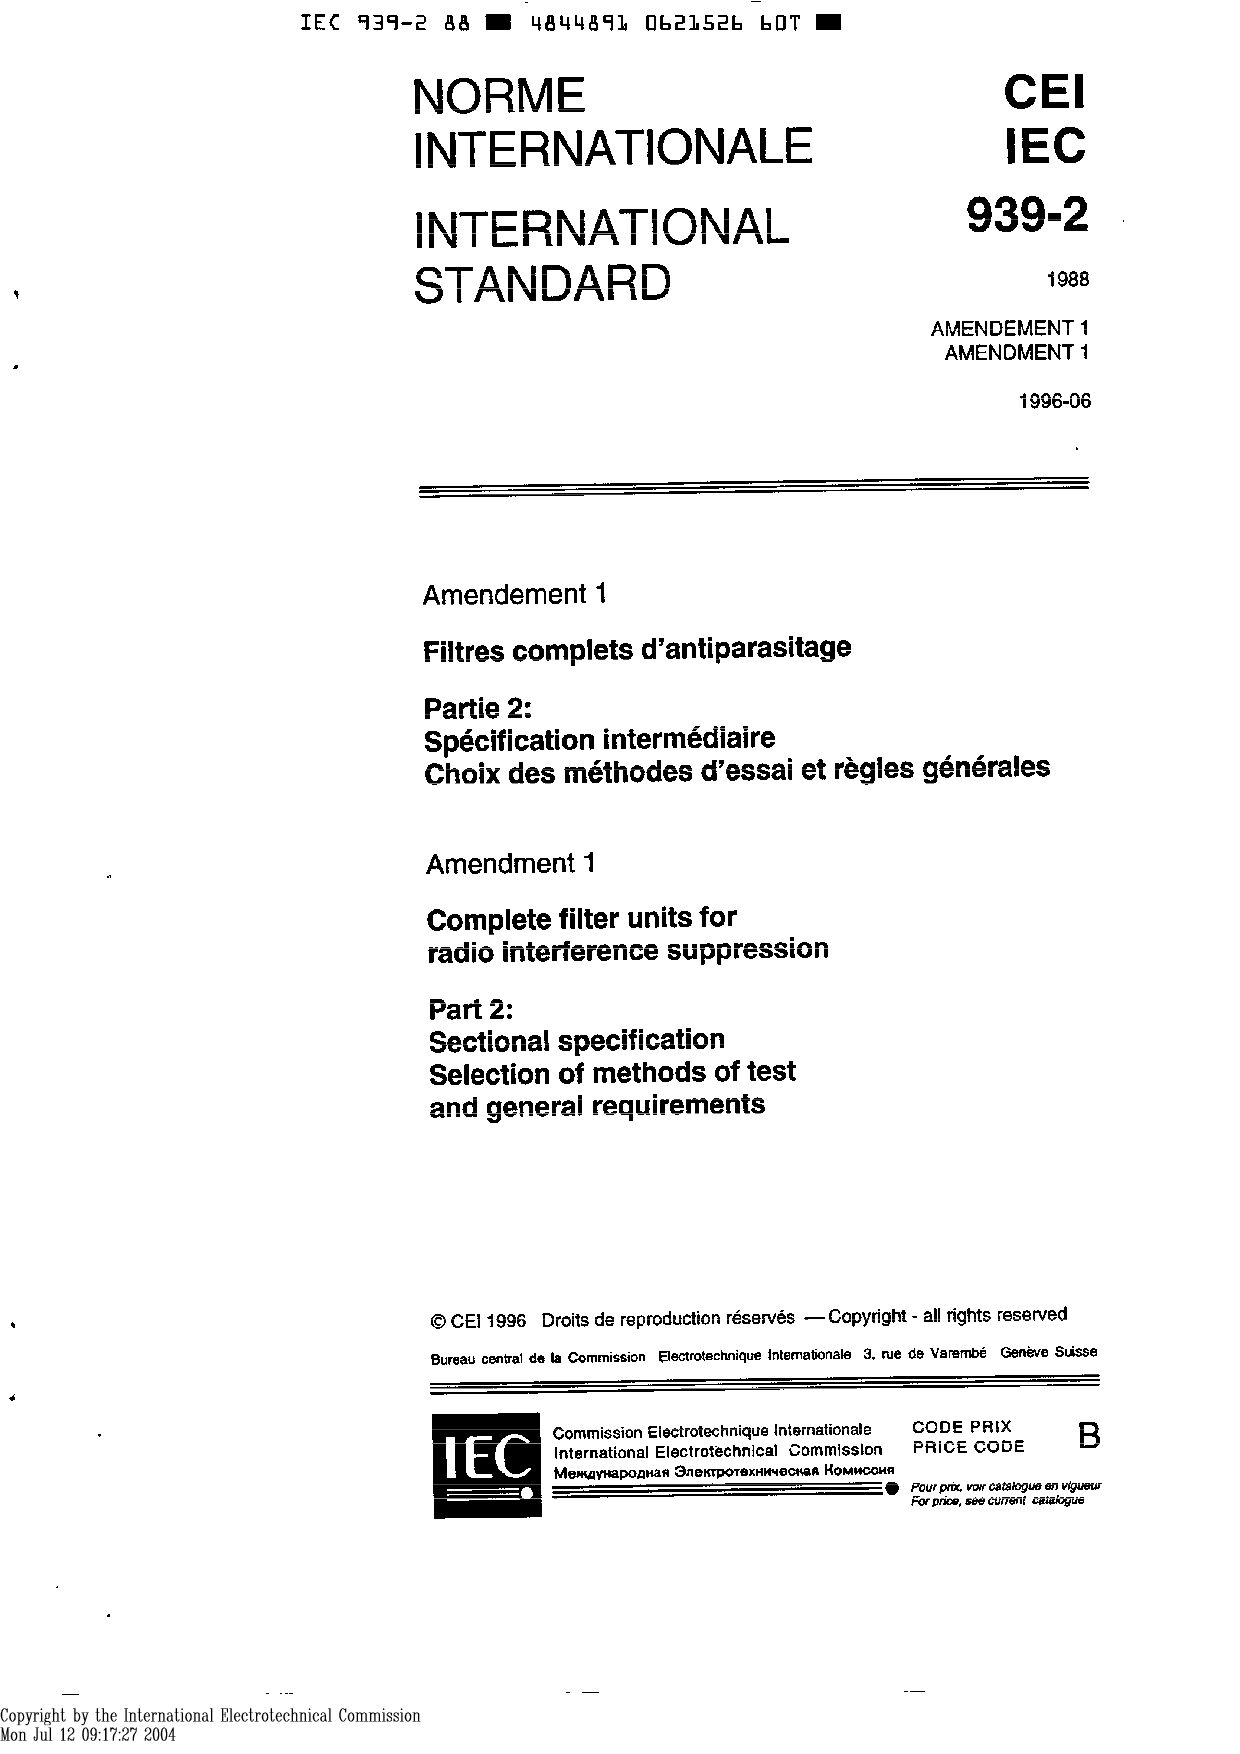 IEC 60939-2:1988封面图